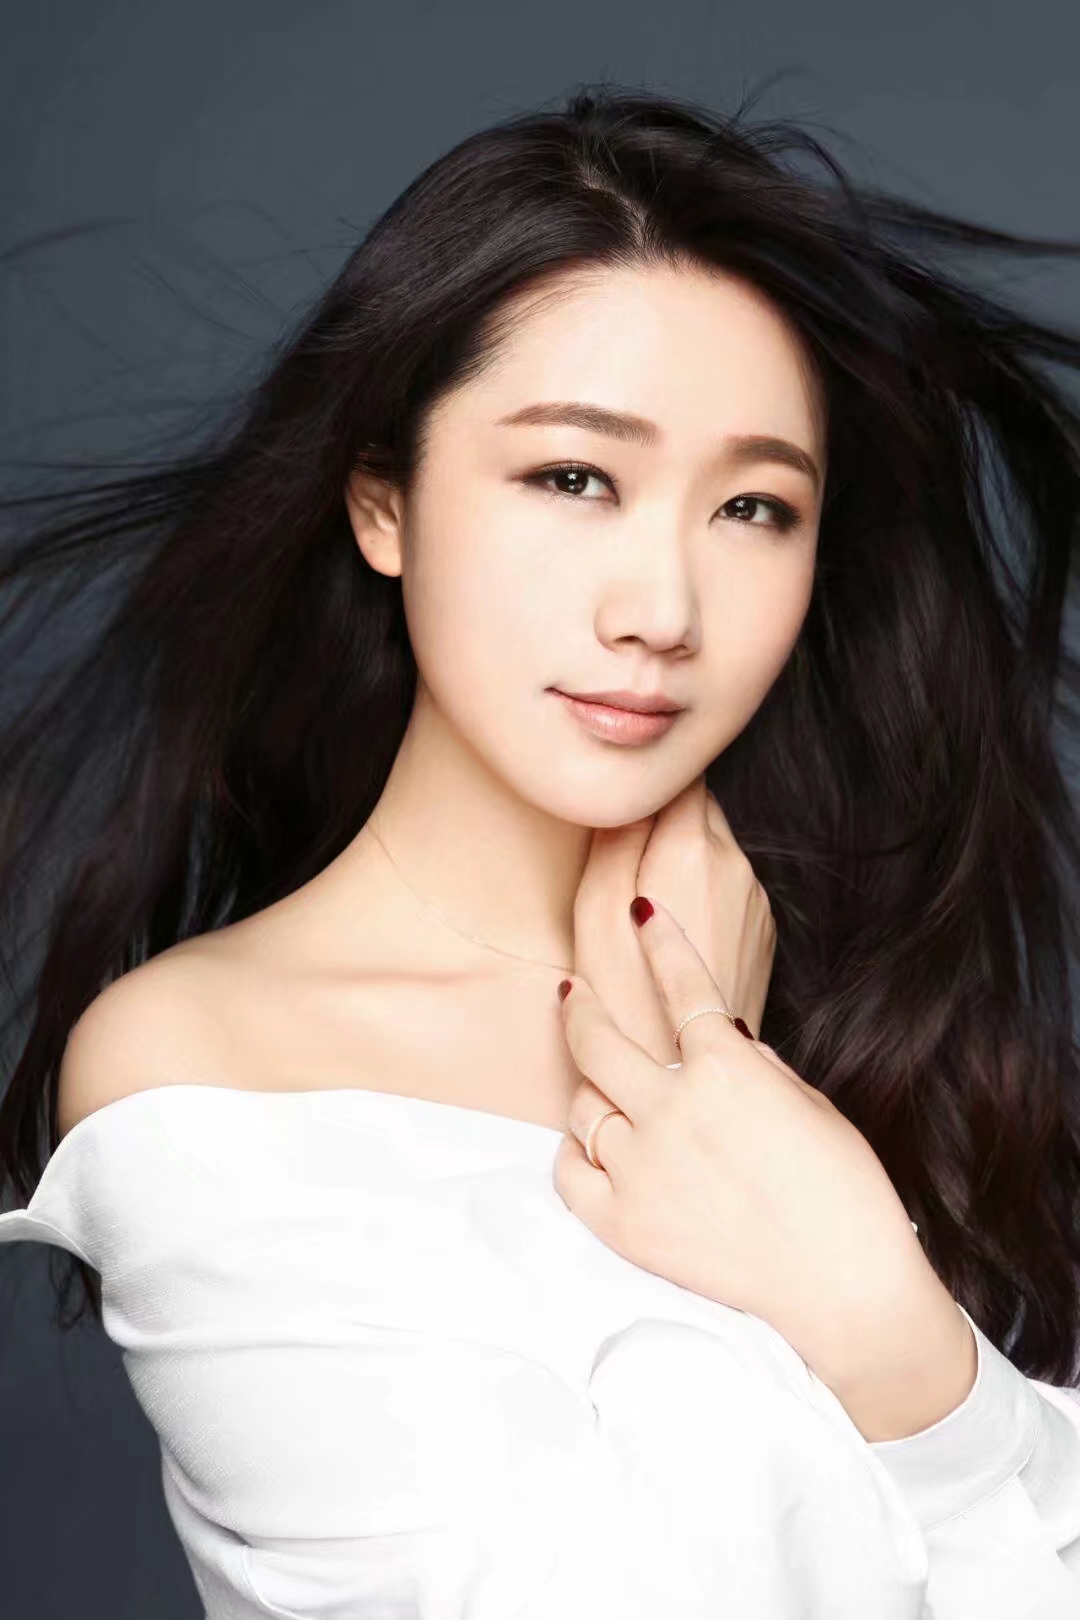 孙露,1986年6月27日出生于辽宁省,中国内地女歌手.